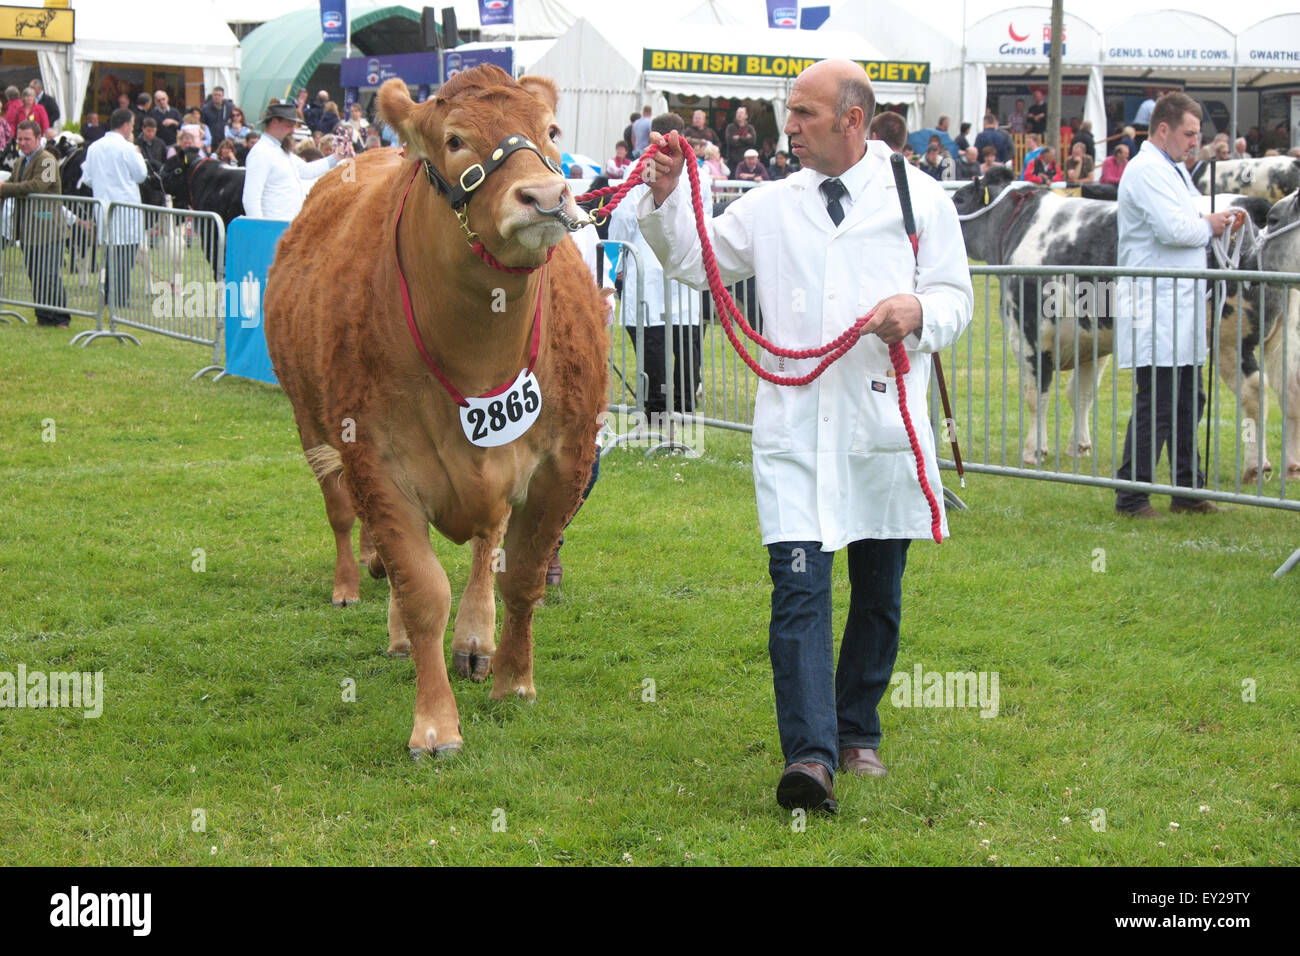 Royal Welsh Show, POWYS, GALLES, UK Luglio 2015.A British Limousin bovini bull essendo portato da un agricoltore durante la mostra nella mostra arena. L'evento attrae oltre 7.500 voci di bestiame. Foto Stock